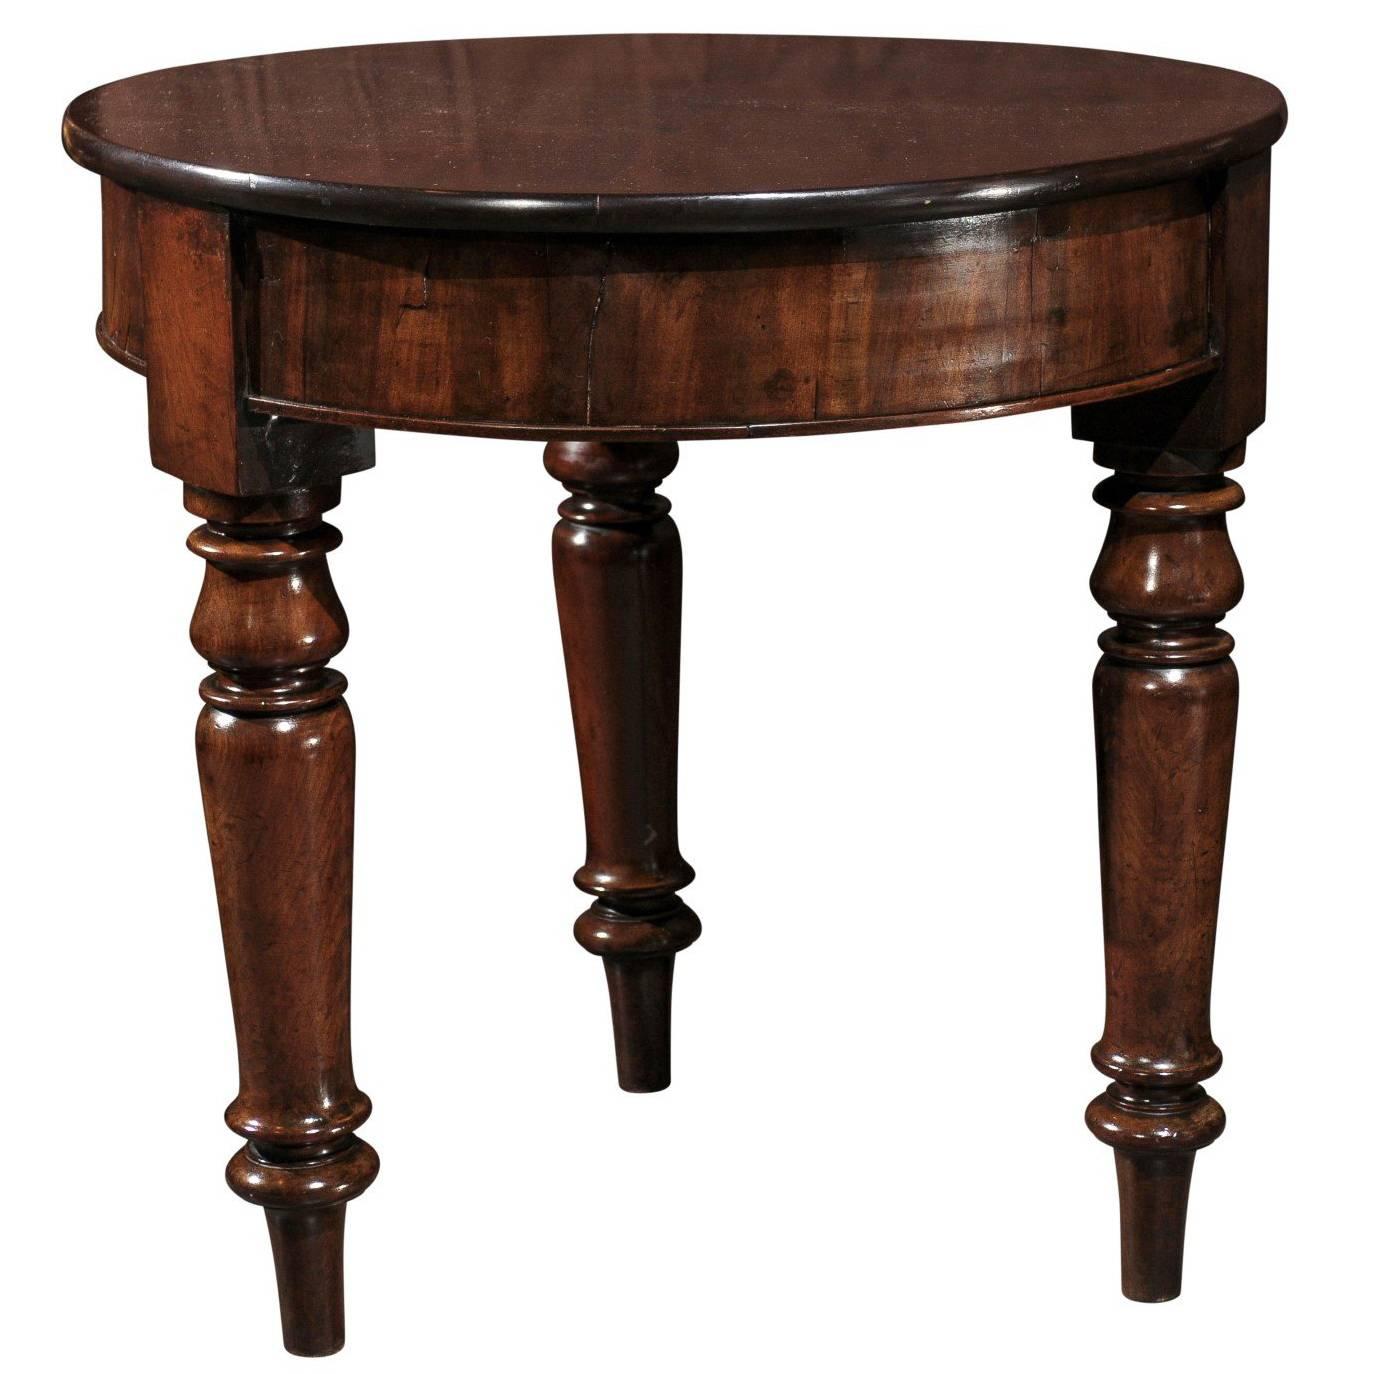 Runder englischer Mahagoni-Tisch aus der Mitte des 19. Jahrhunderts, auf drei gedrechselten Beinen